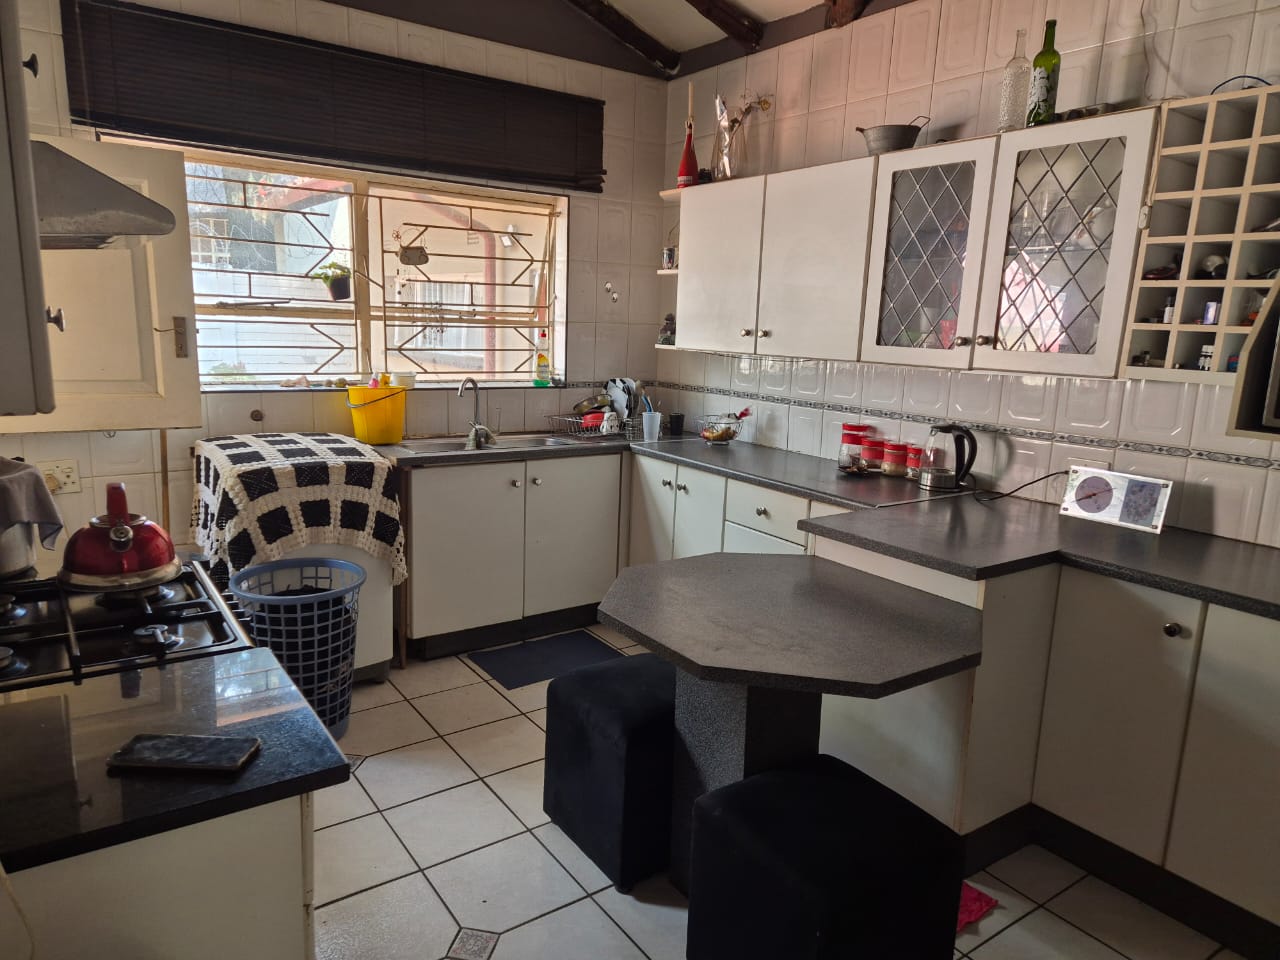 6 Bedroom Property for Sale in Croydon Gauteng